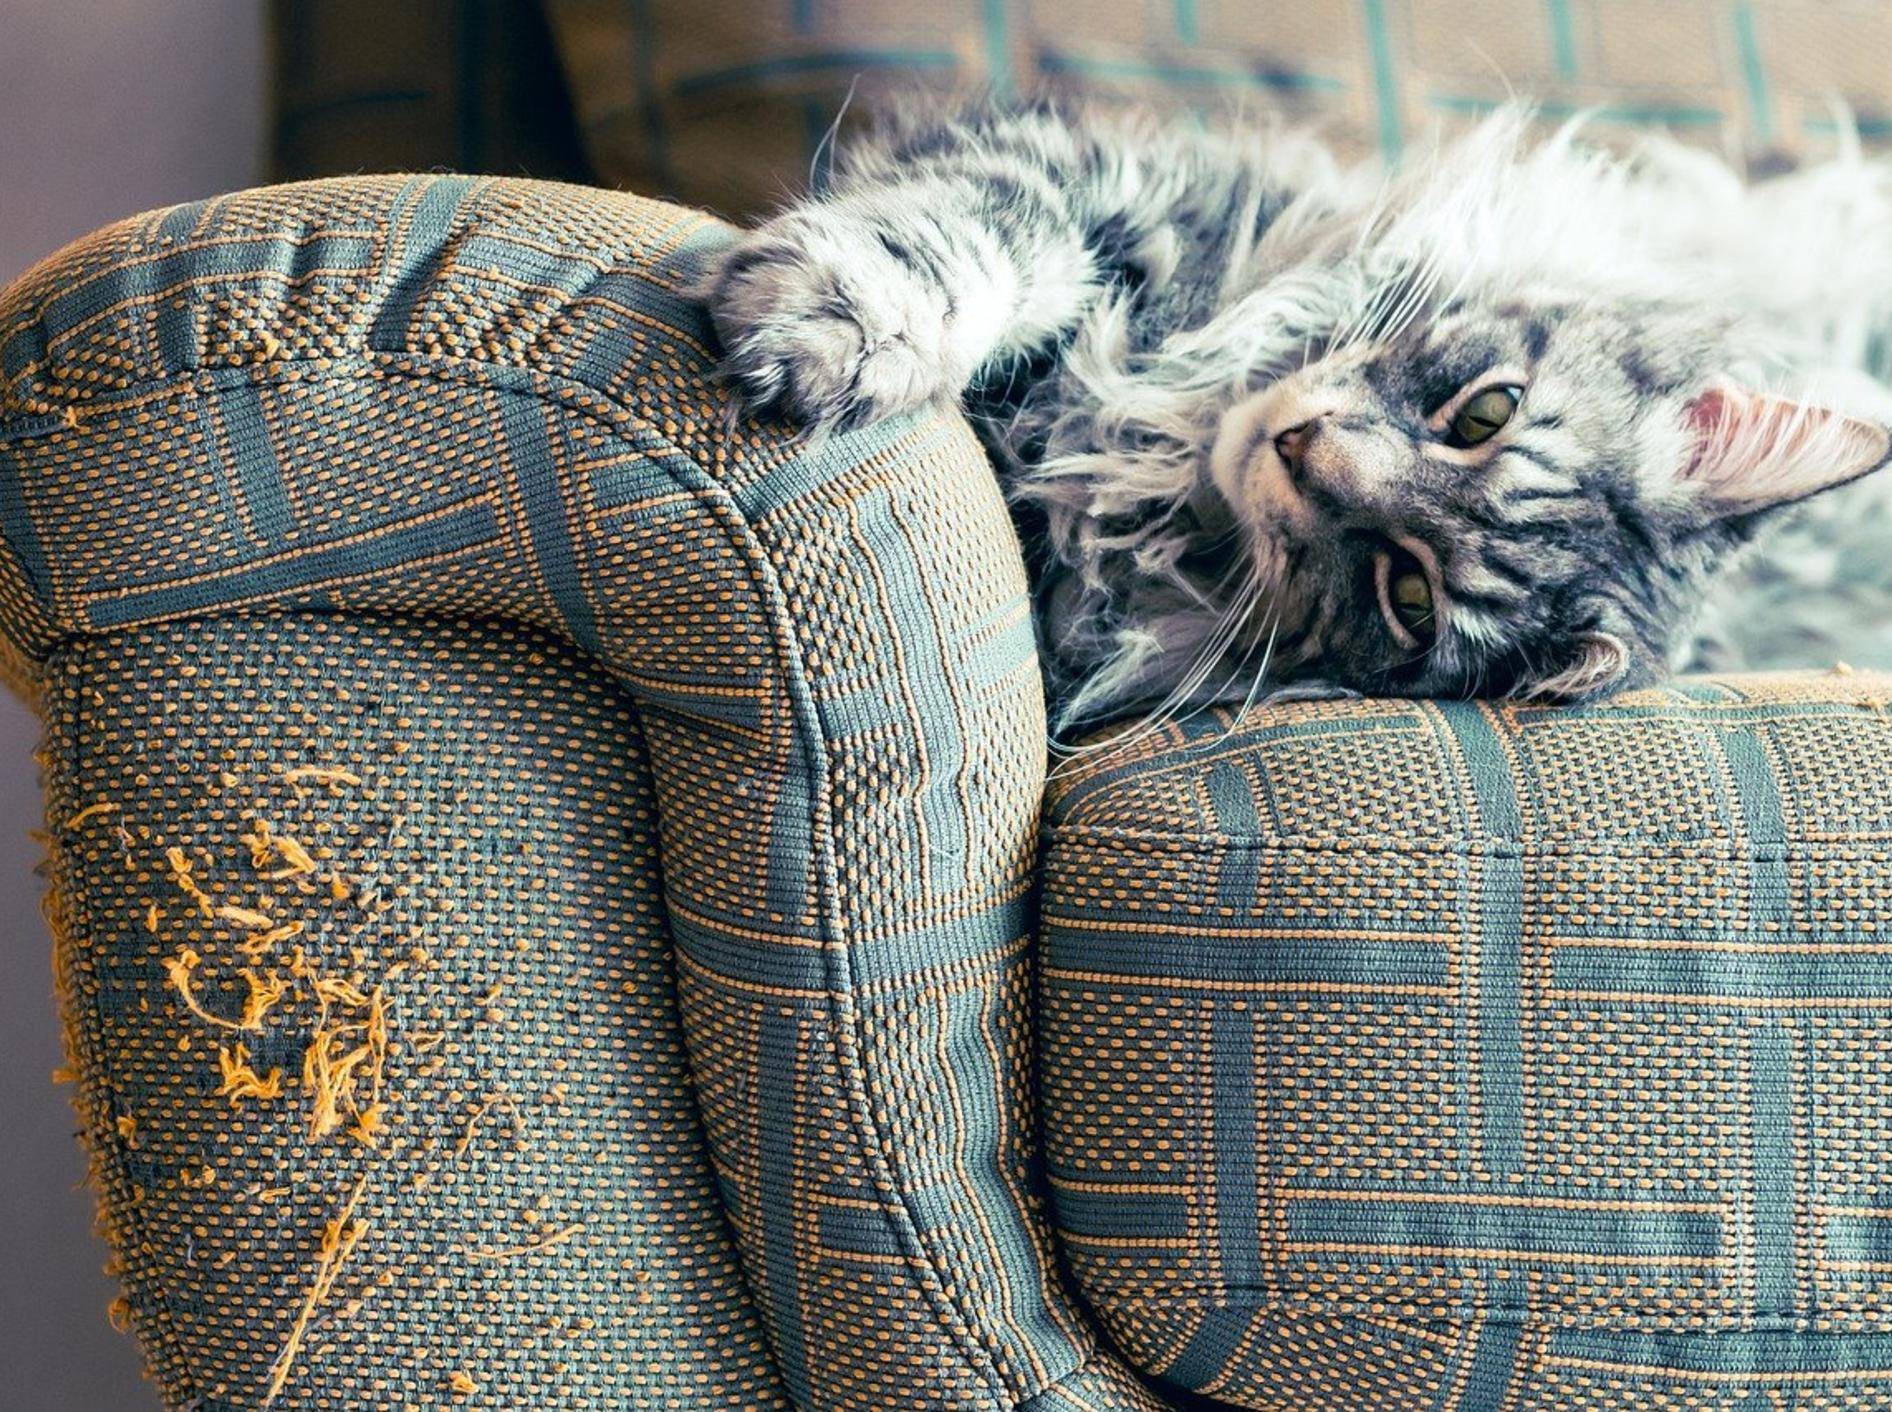 Eine grau-weiß-getigerte Katze liegt auf einem Sofa. Eine Armlehne des Sofas zeigt starke Kratzspuren von den Katzenkrallen.